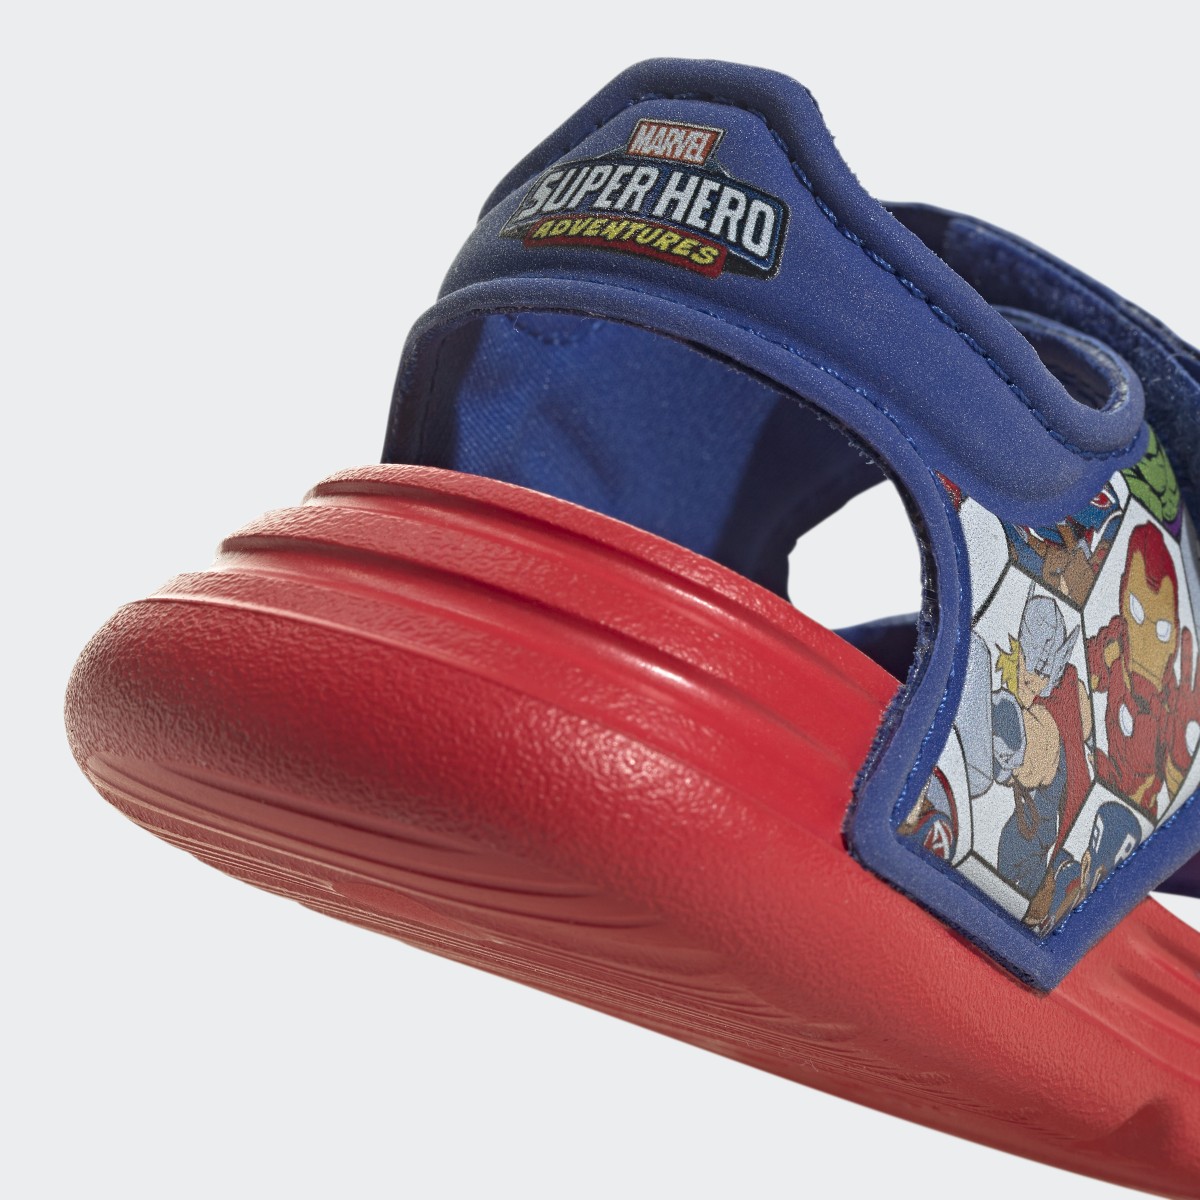 Adidas Sandalia AltaSwim adidas x Marvel Super Hero Adventures. 10